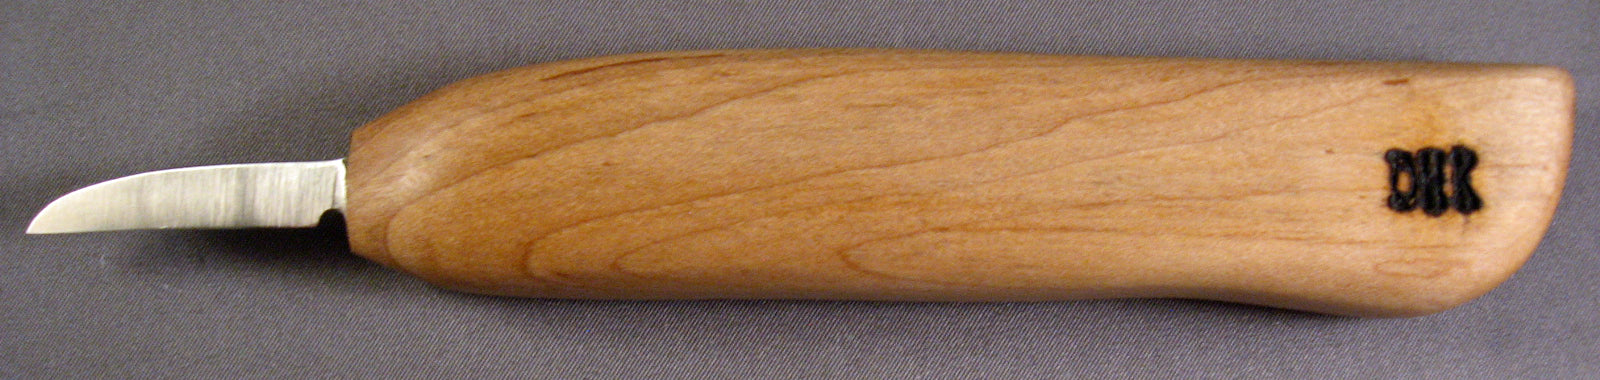 Deep Holler Carving Knife- 1-3/8"- FLAT GRIND-STANDARD HANDLE